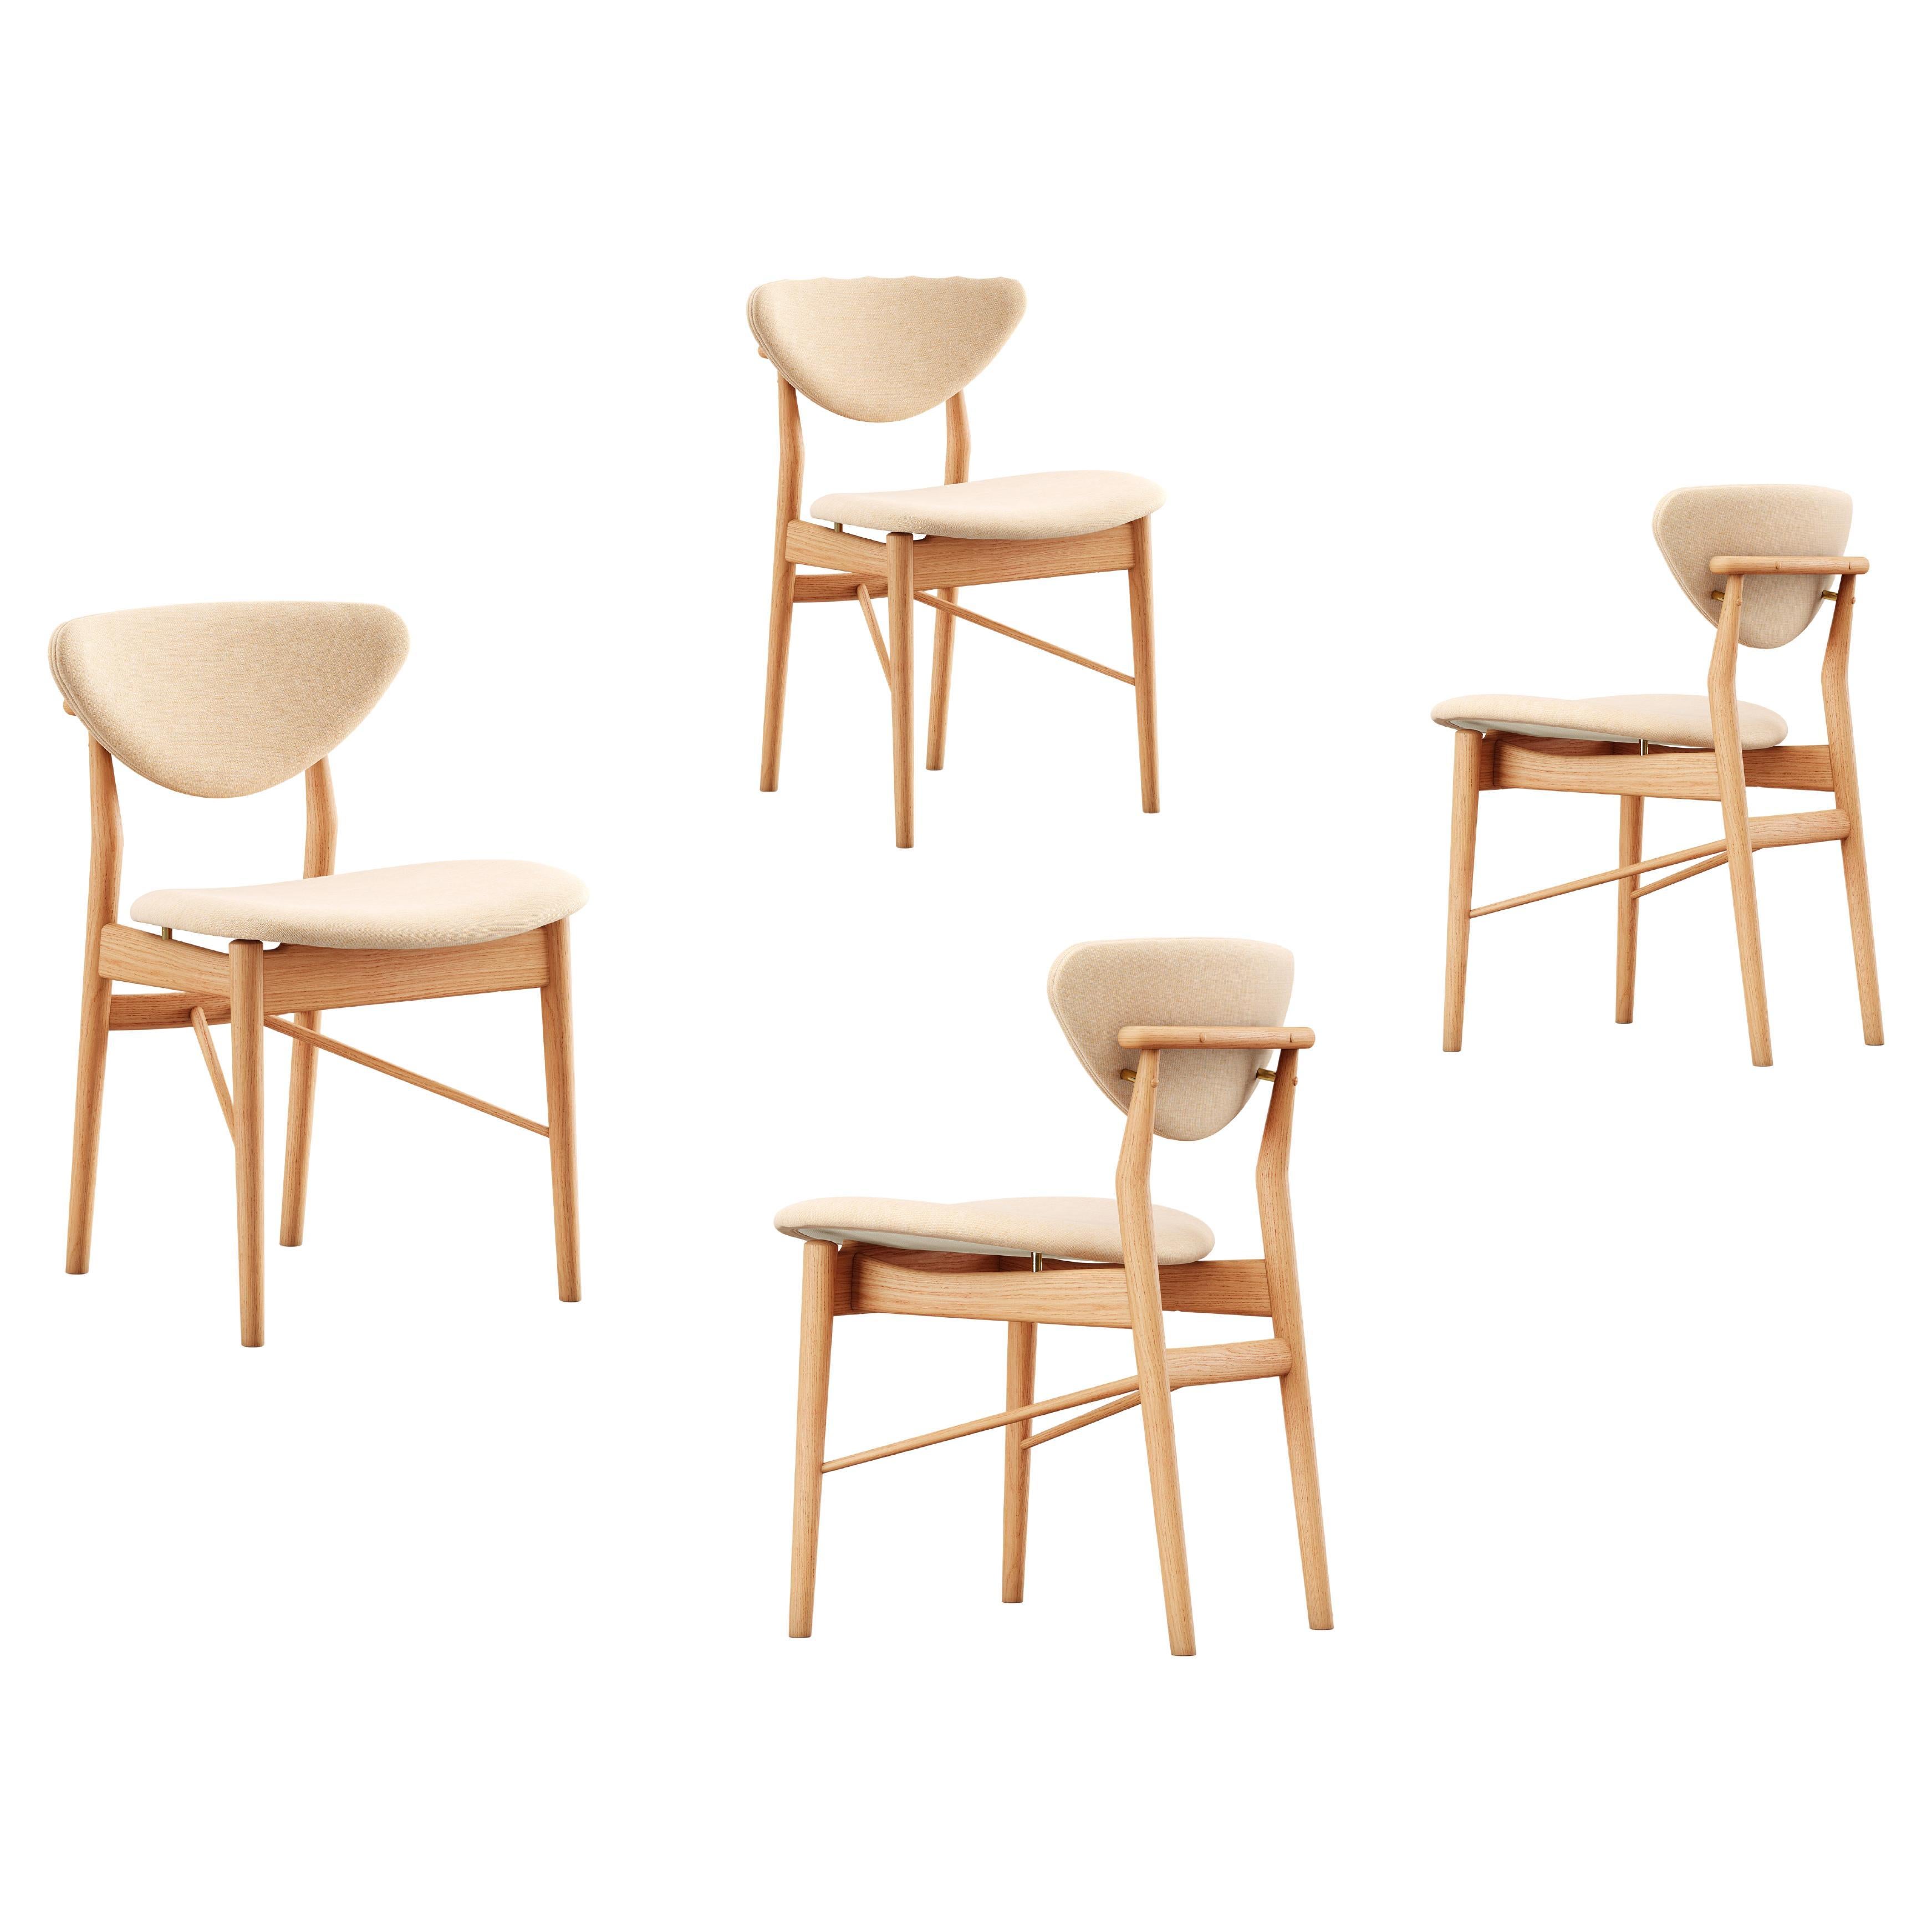 SET of Finn Juhl 108 Chairs by House of Finn Juhl